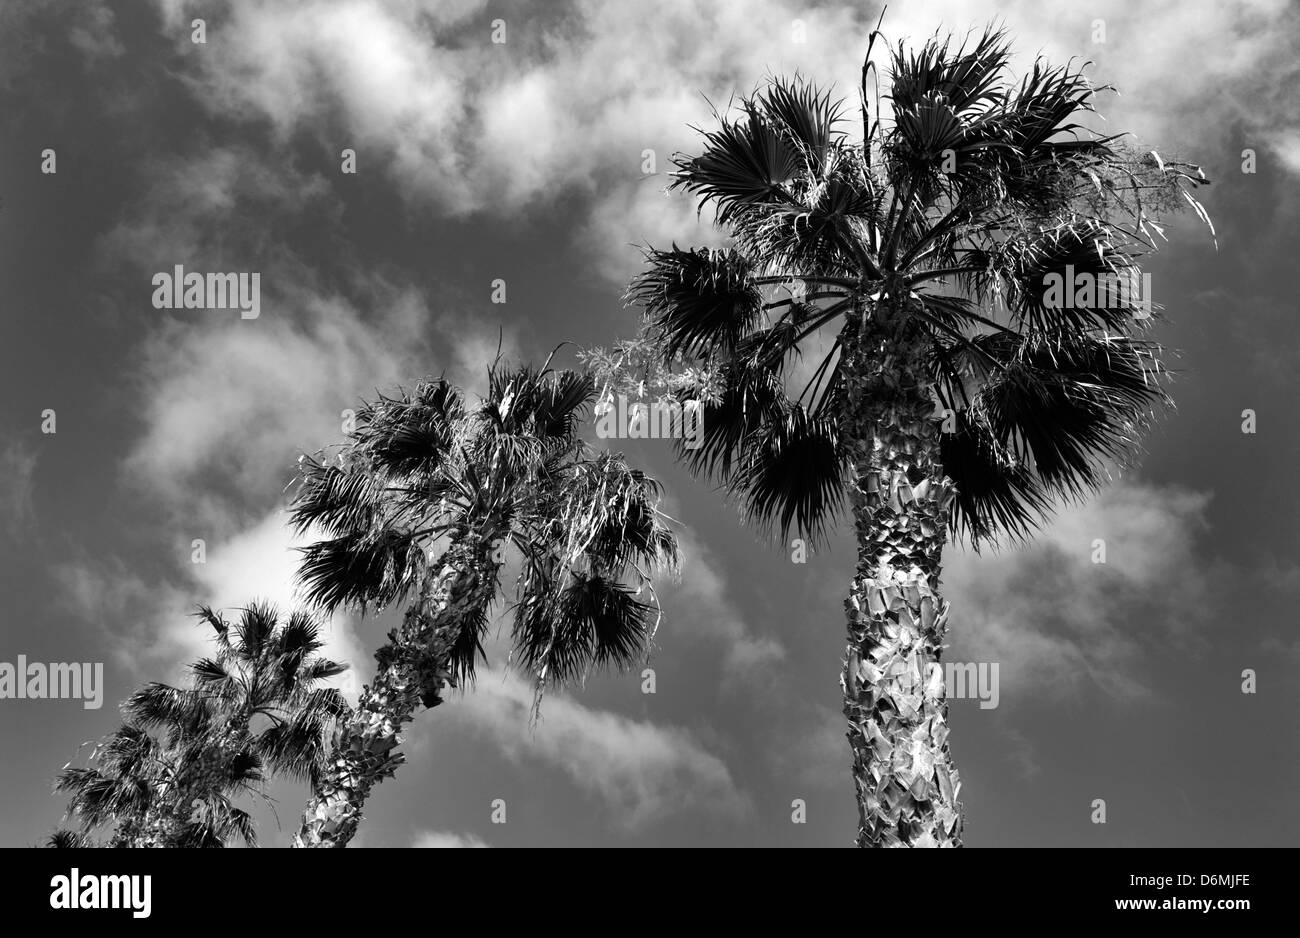 Una fotografia in bianco e nero di palme con le nuvole dietro. Fotografia scattata da sotto. Foto Stock